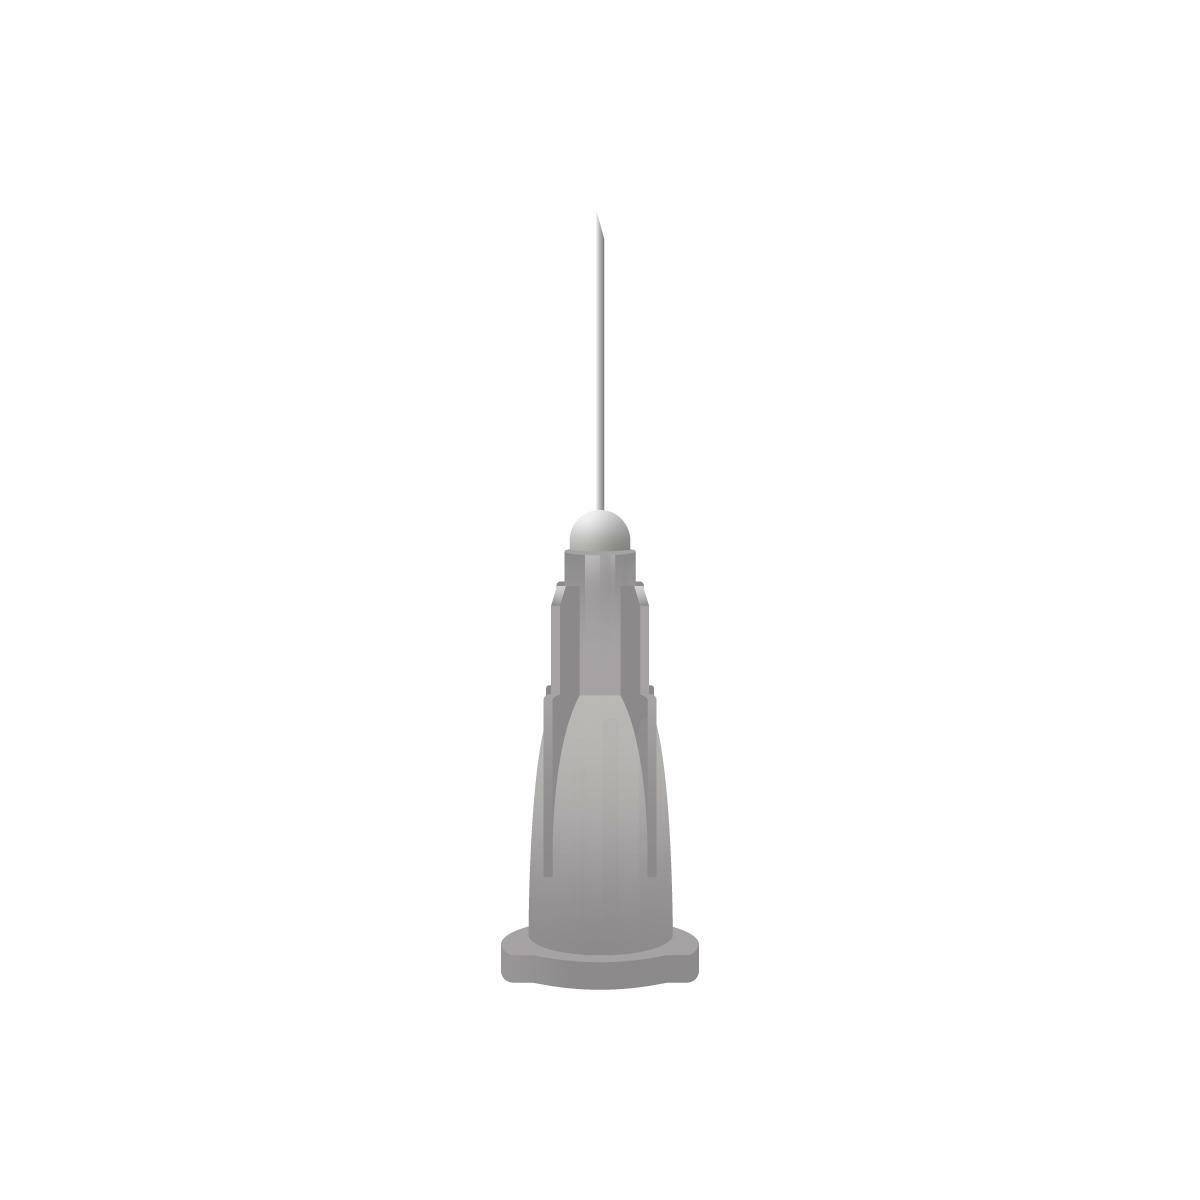 27g Grey 0.5 inch Unisharp Needles (13mm x 0.4mm) - UKMEDI